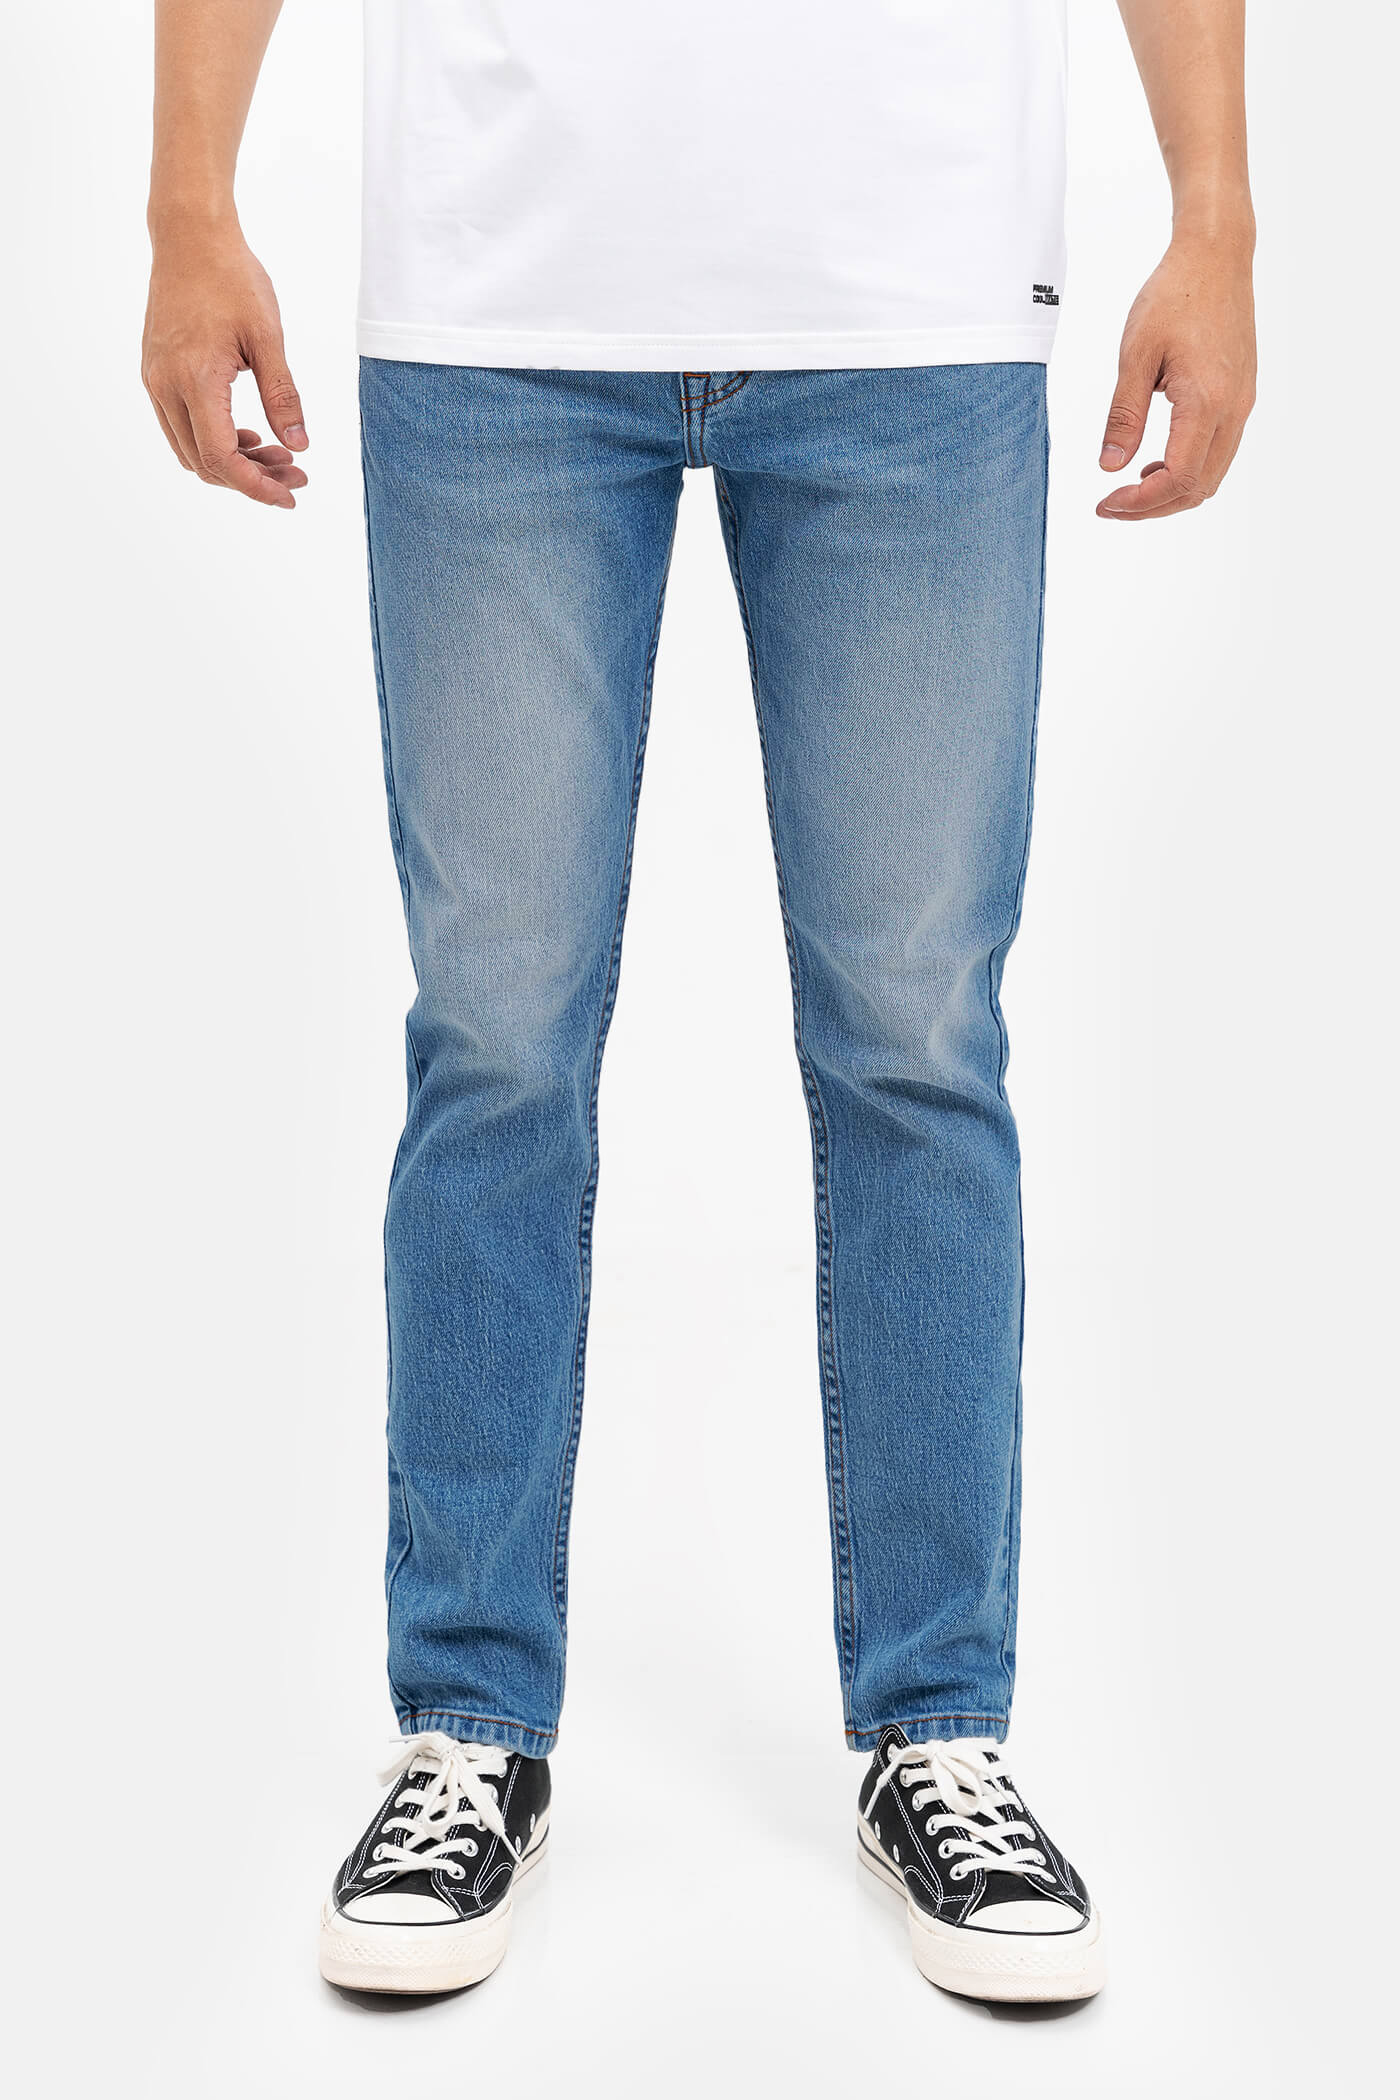 FLASH SALE - Quần Jeans Clean Denim dáng Slimfit  S3 Xanh nhạt 2